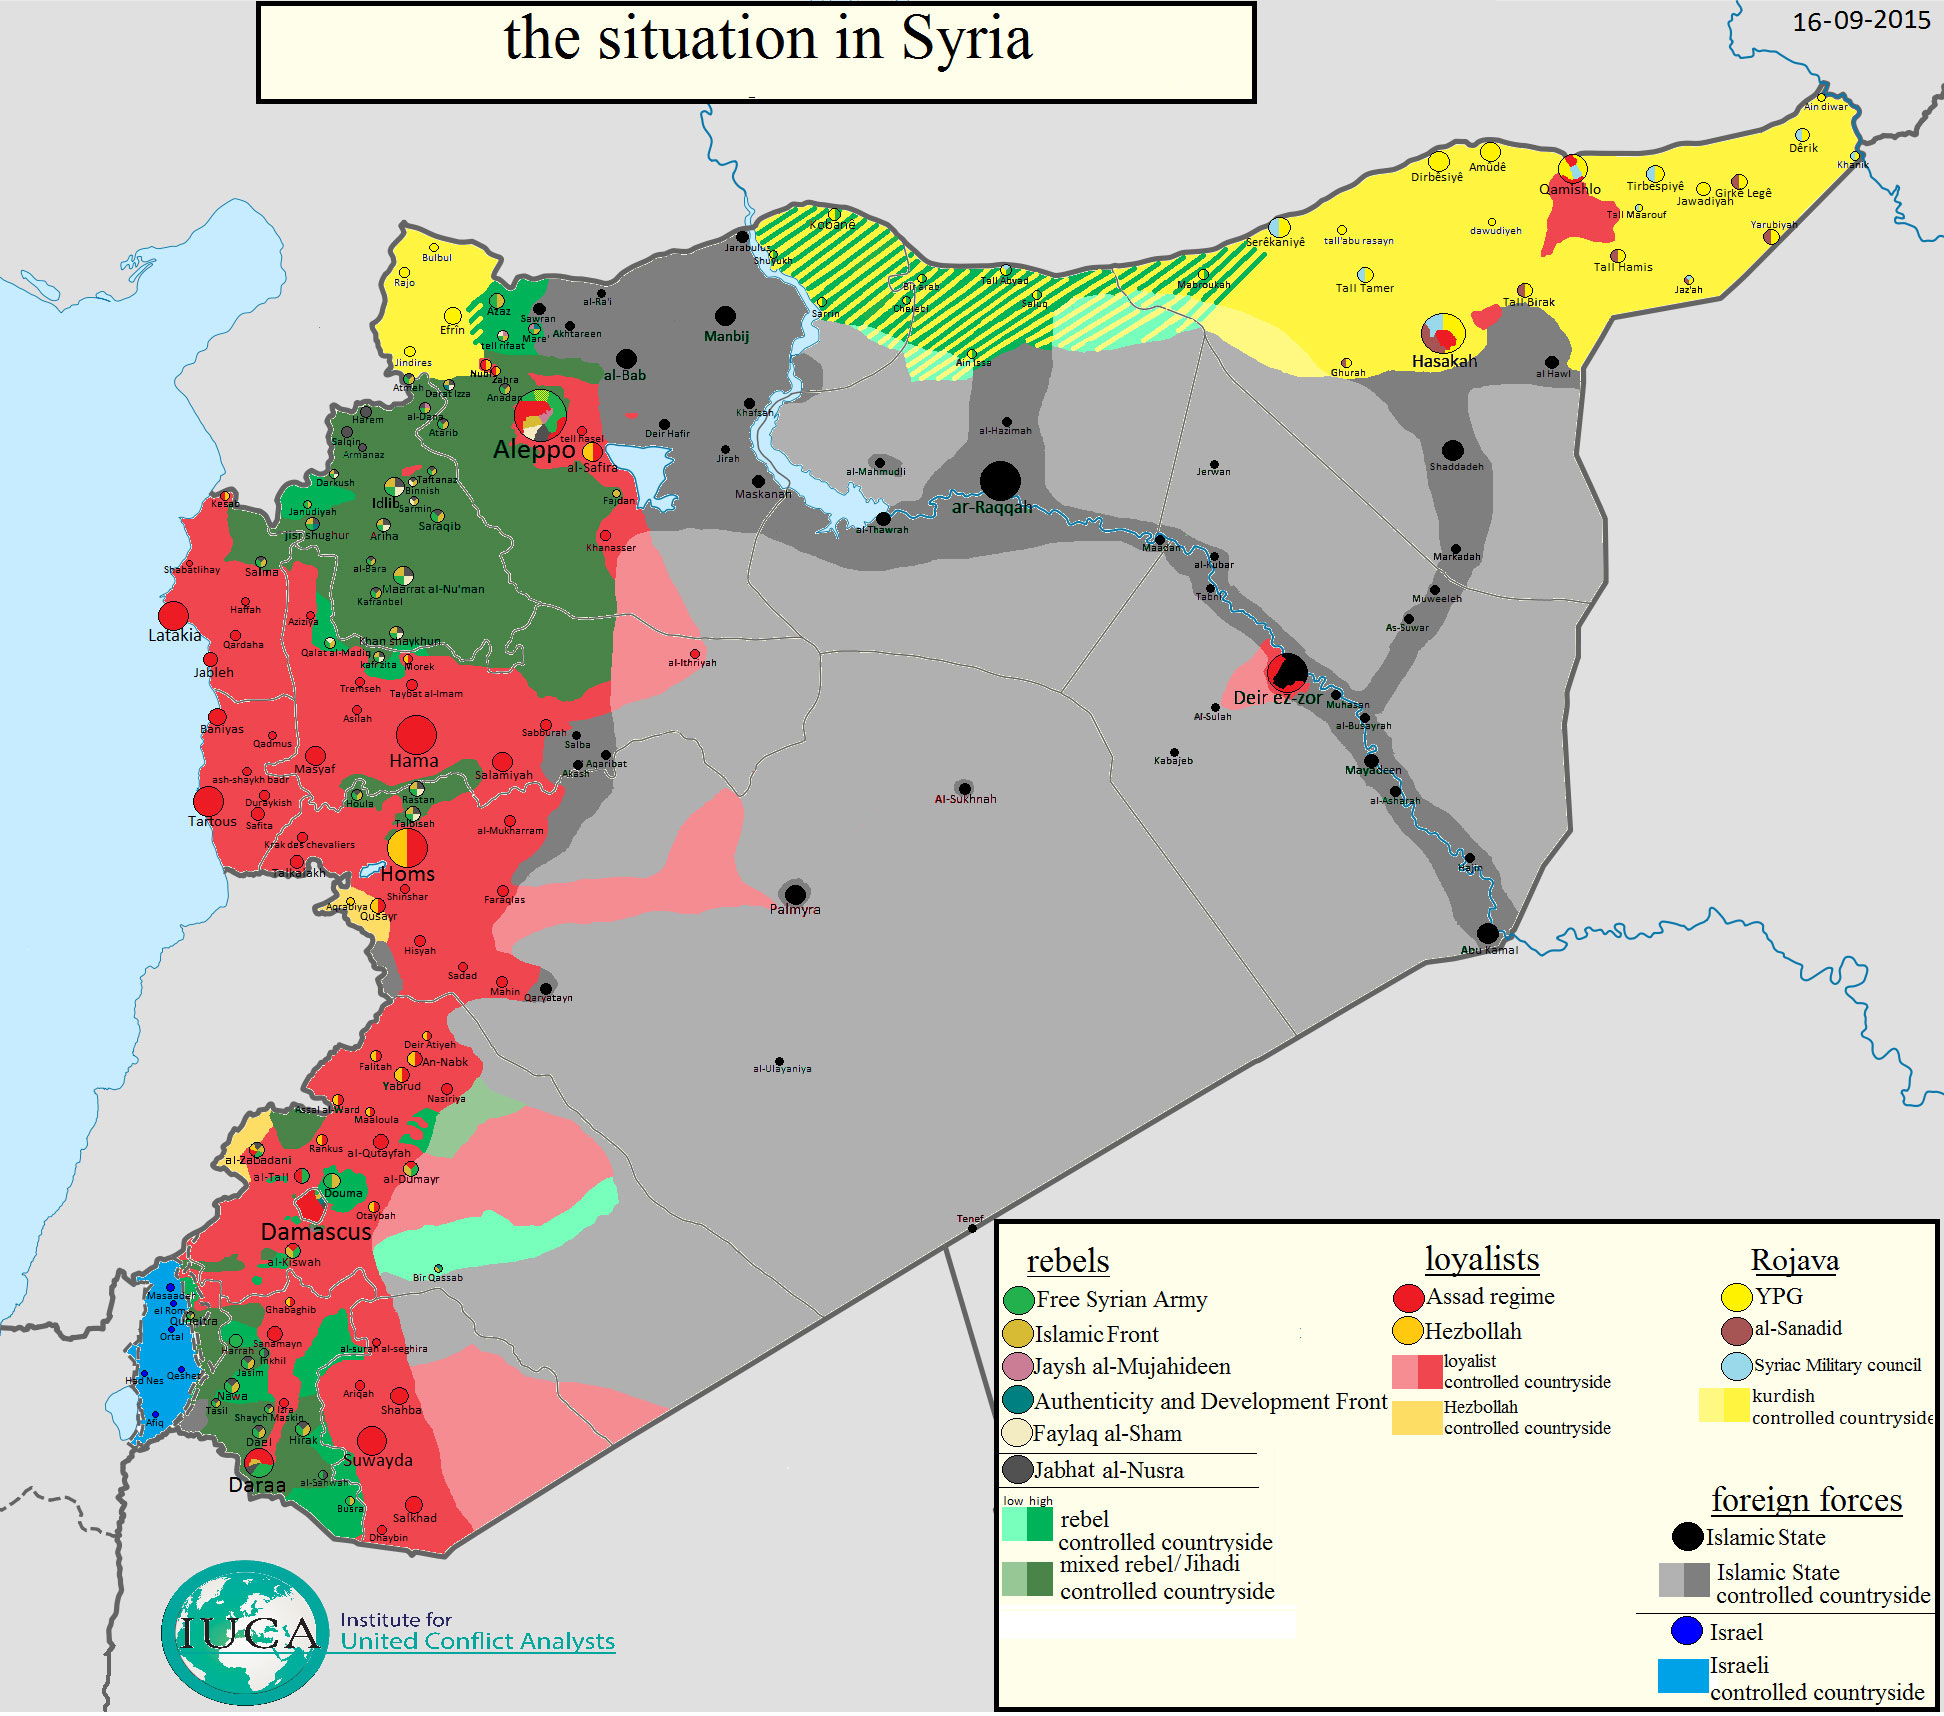 Карта расположения сторон в Сирии: ИГИЛ, оппозиция, Асадисты, курды по состоянию на 16.09.2015 